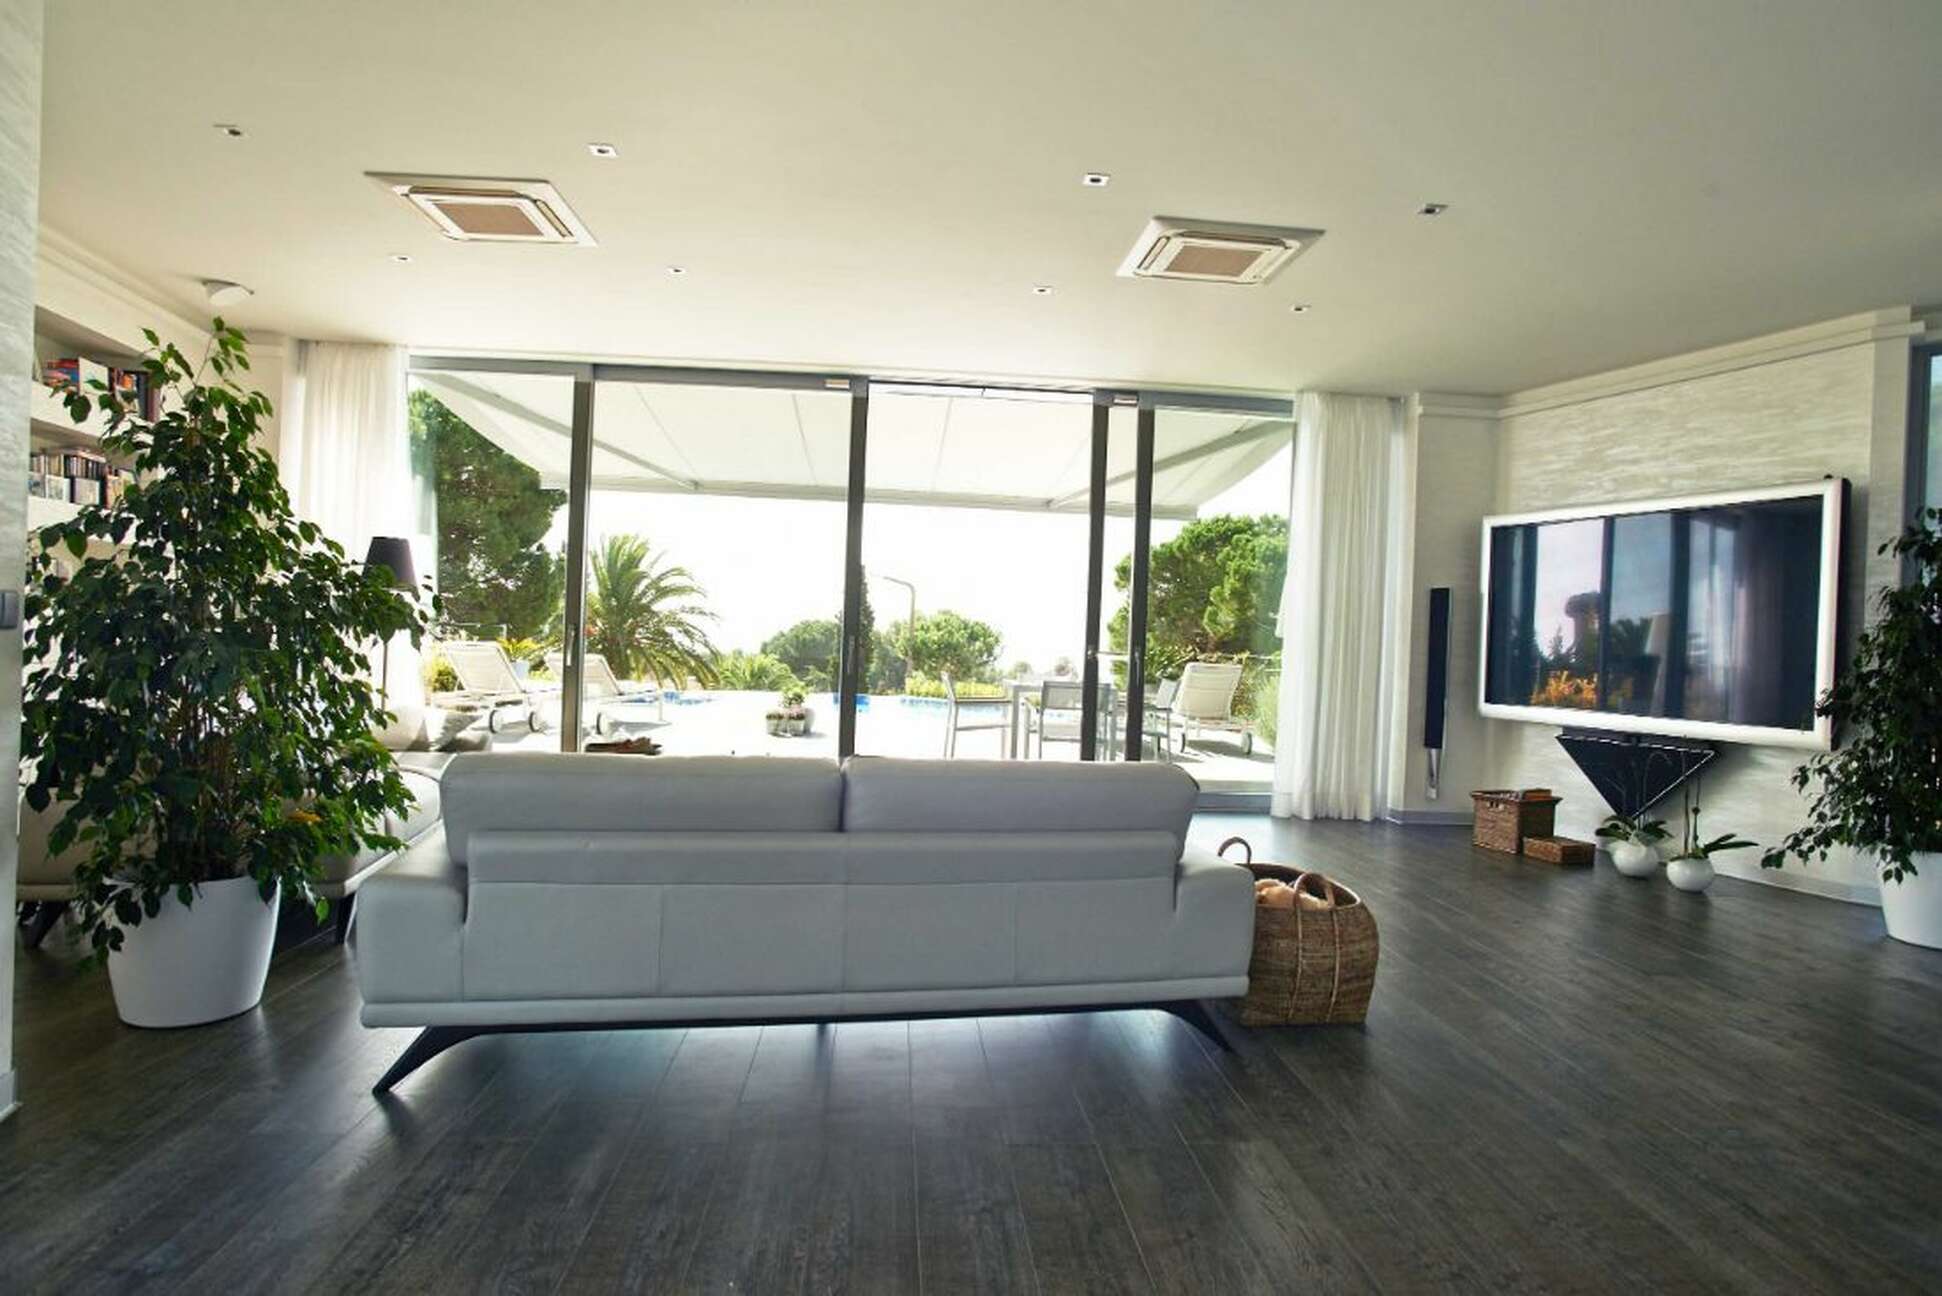 Maison exclusive avec vue imprenable sur la mer à Tossa de Mar, disponible dès maintenant.